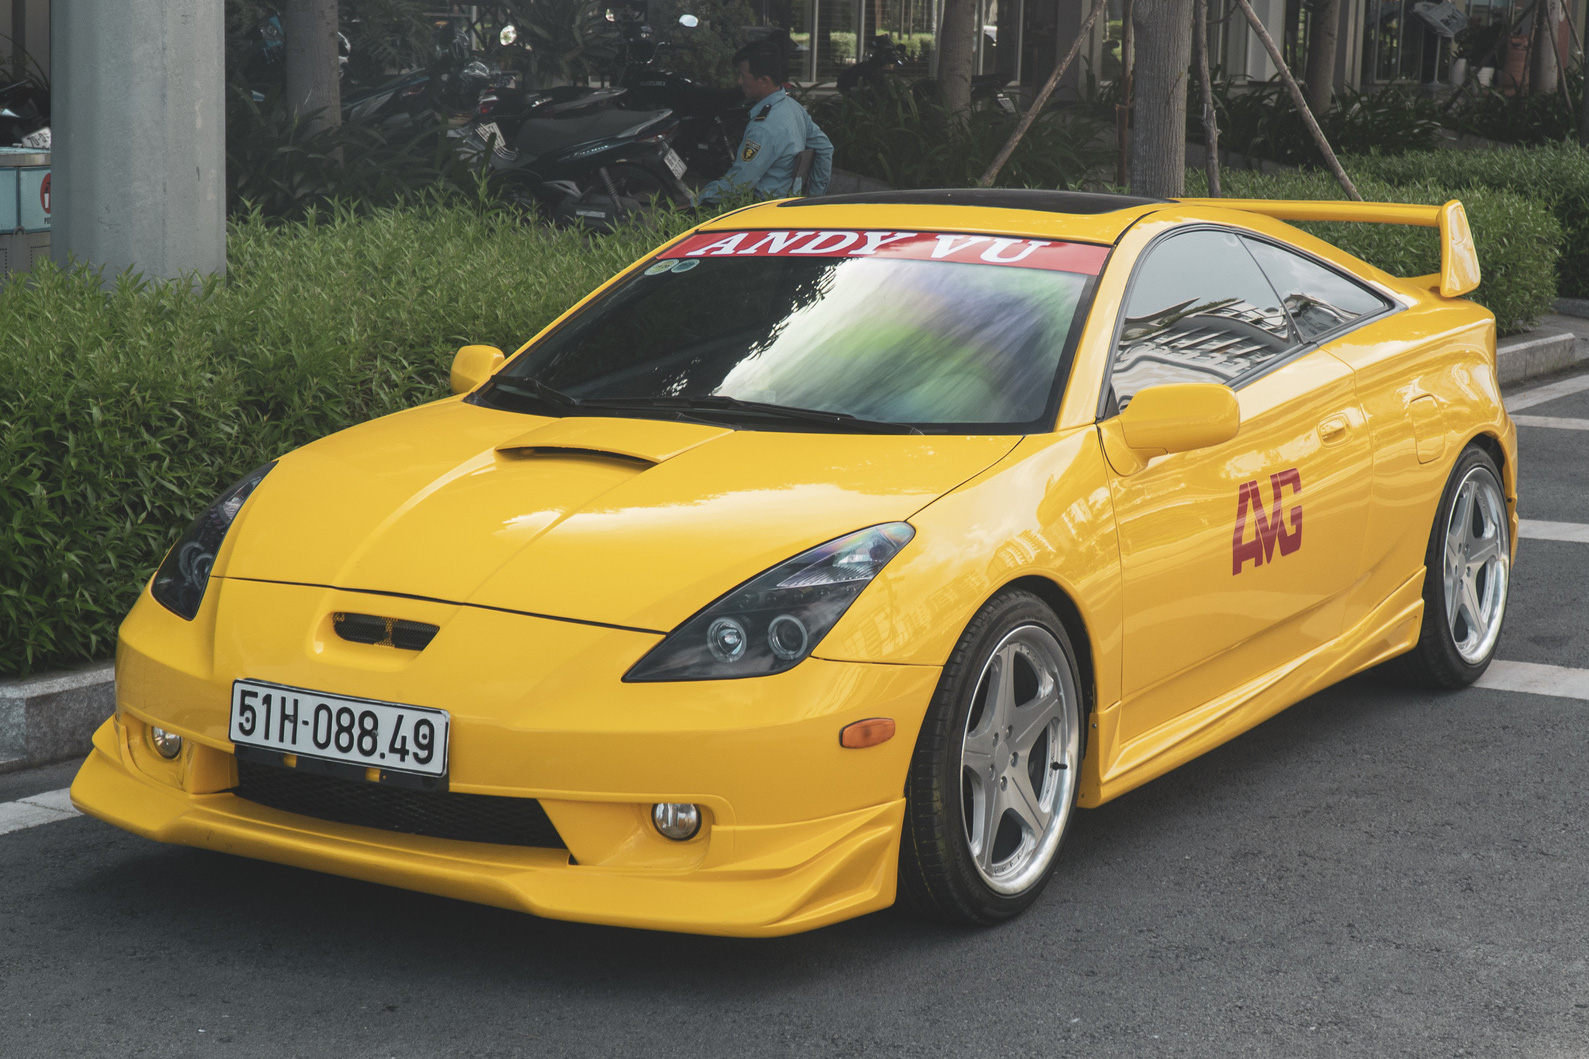 Khám phá Toyota Celica GT hàng hiếm tại Việt Nam của vlogger Andy Vu